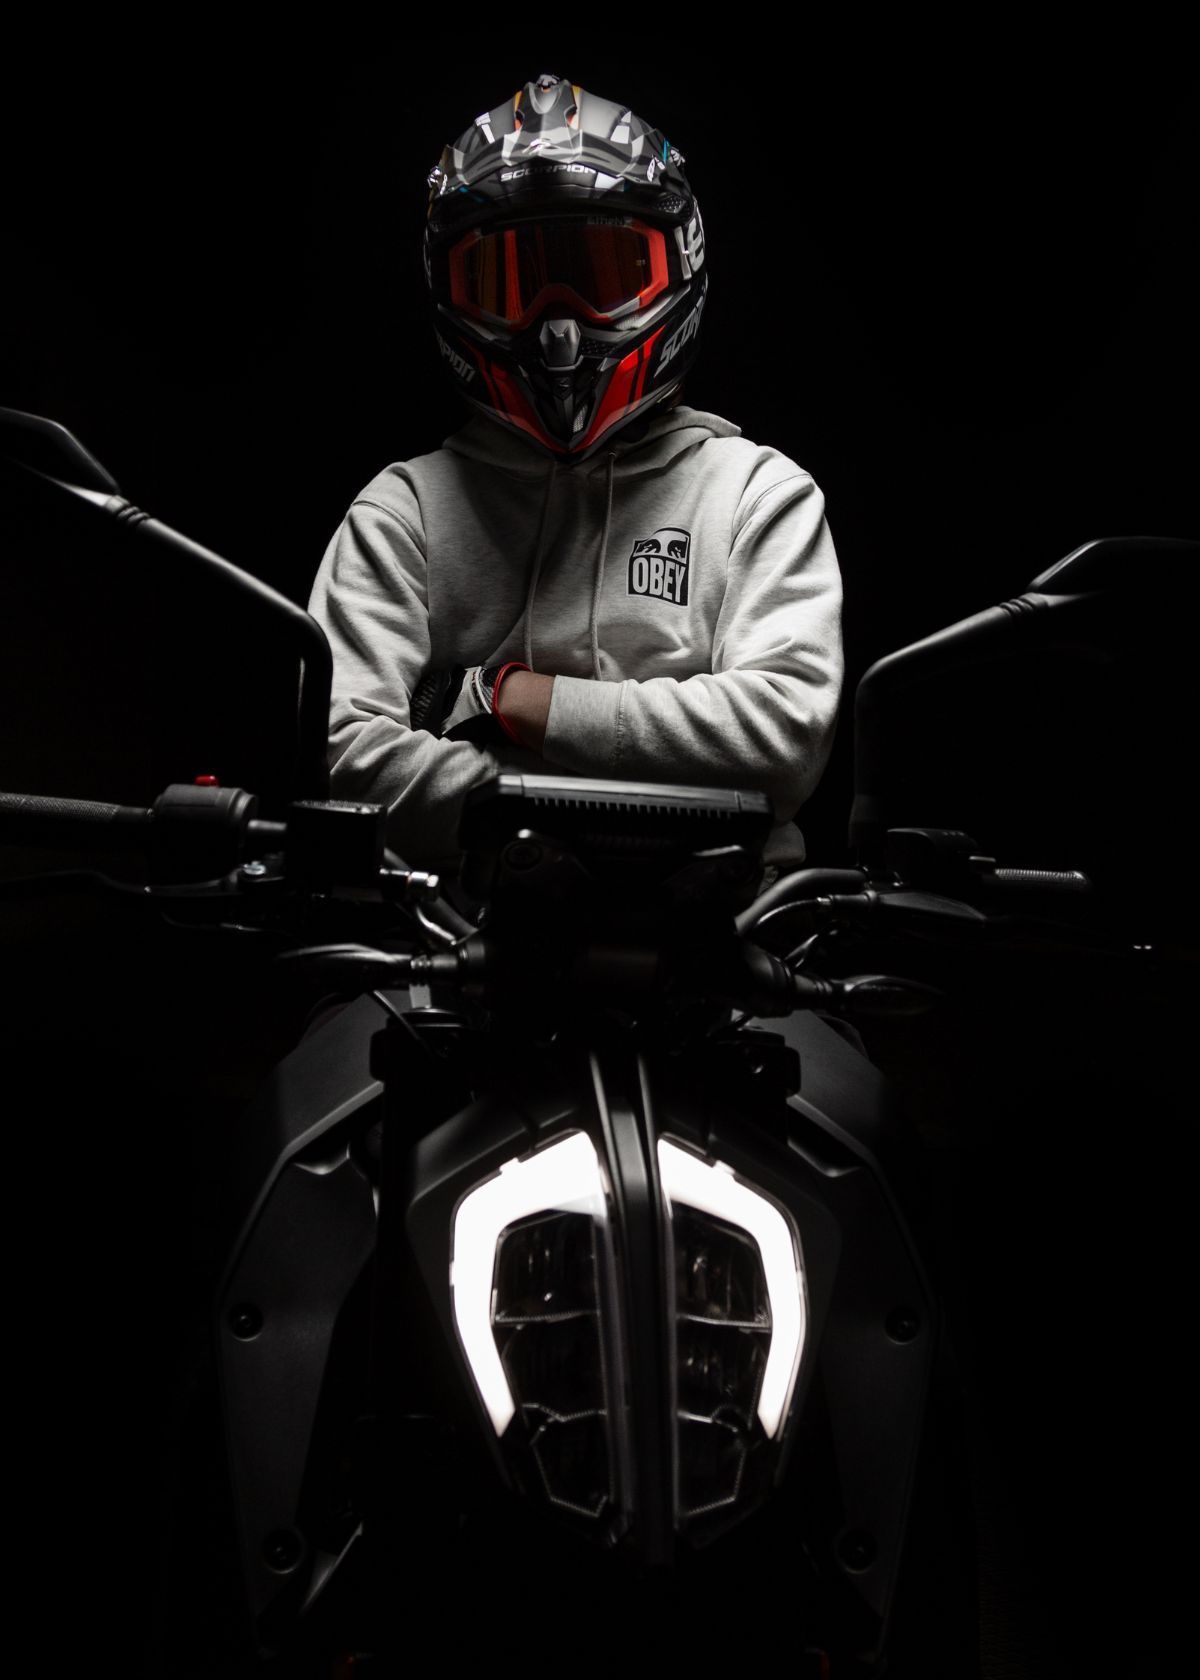 Best Helmet Camera for Motorcycle